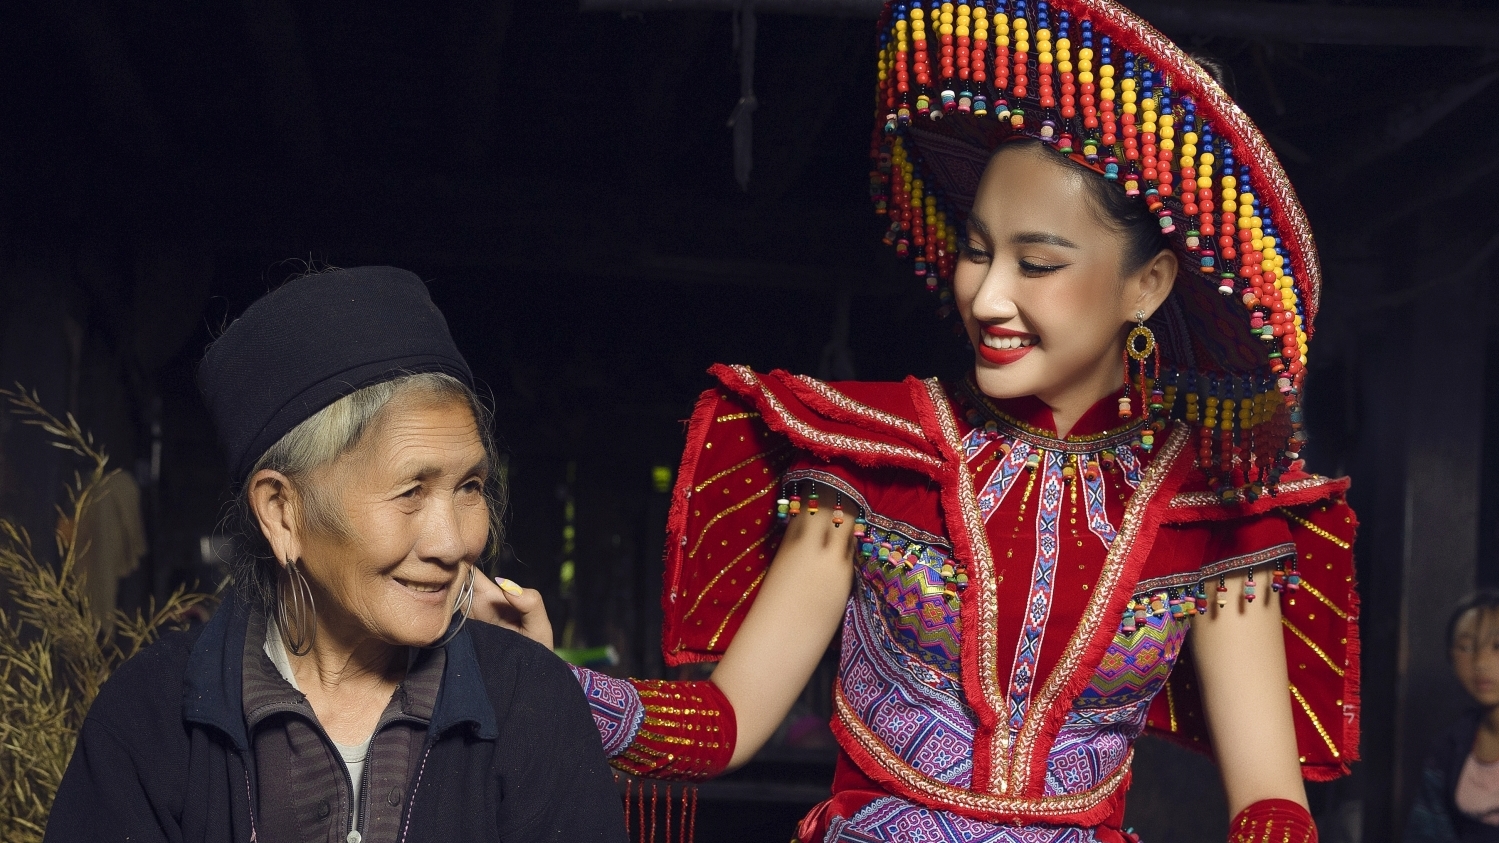 Đoàn Hồng Trang gây ấn tượng với trang phục mang bản sắc văn hóa dân tộc